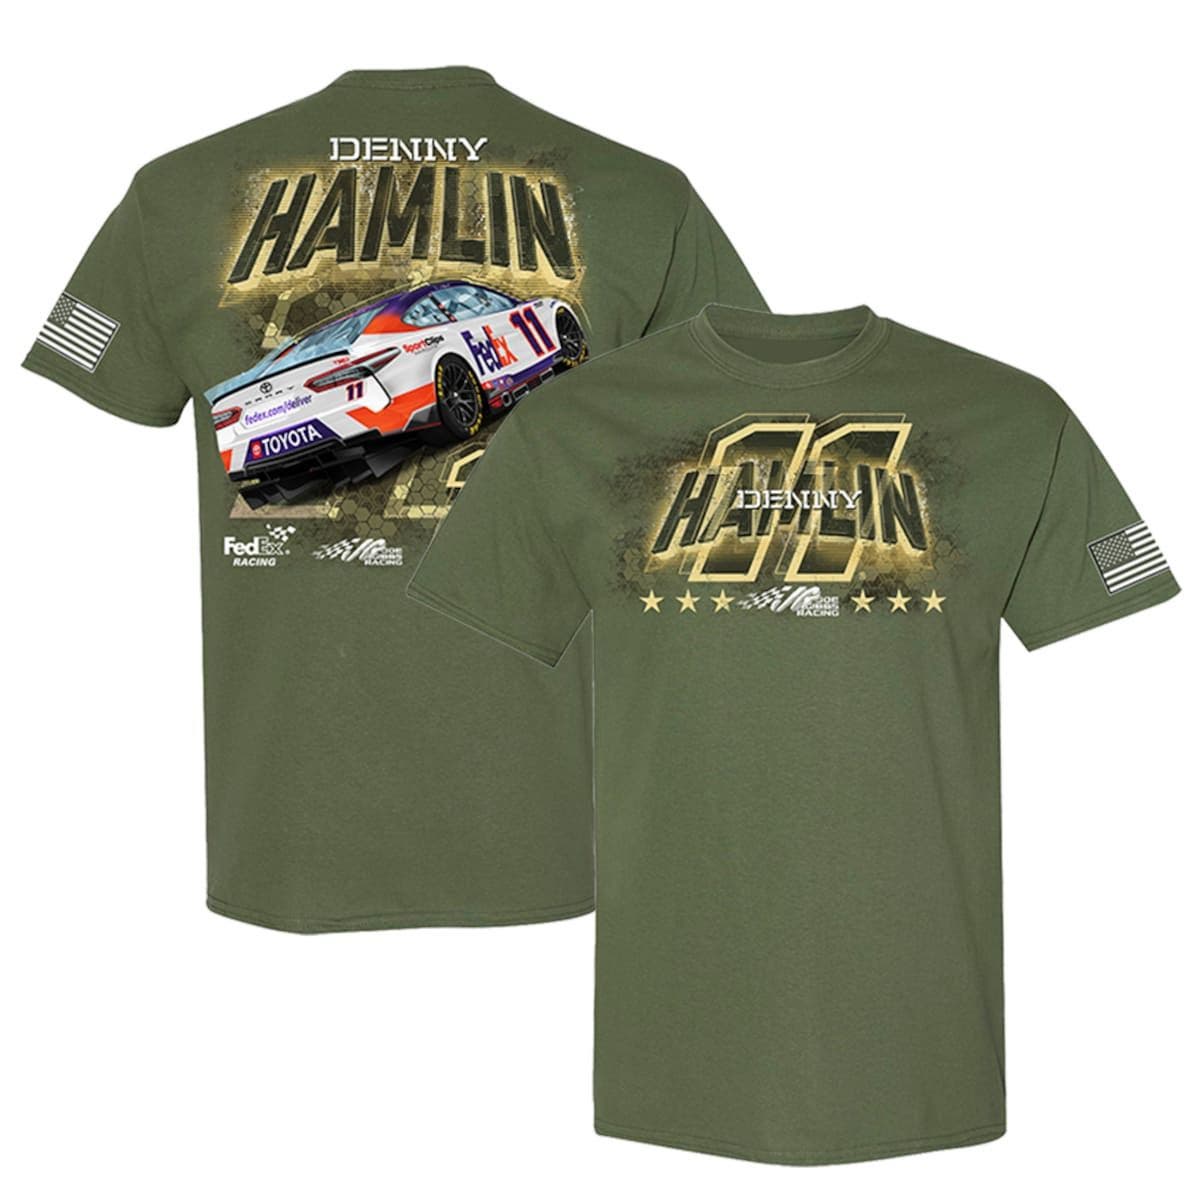 JOE GIBBS RACING TEAM COLLECTION Men's Joe Gibbs Racing Team Collection Olive Denny Hamlin Military T-Shirt